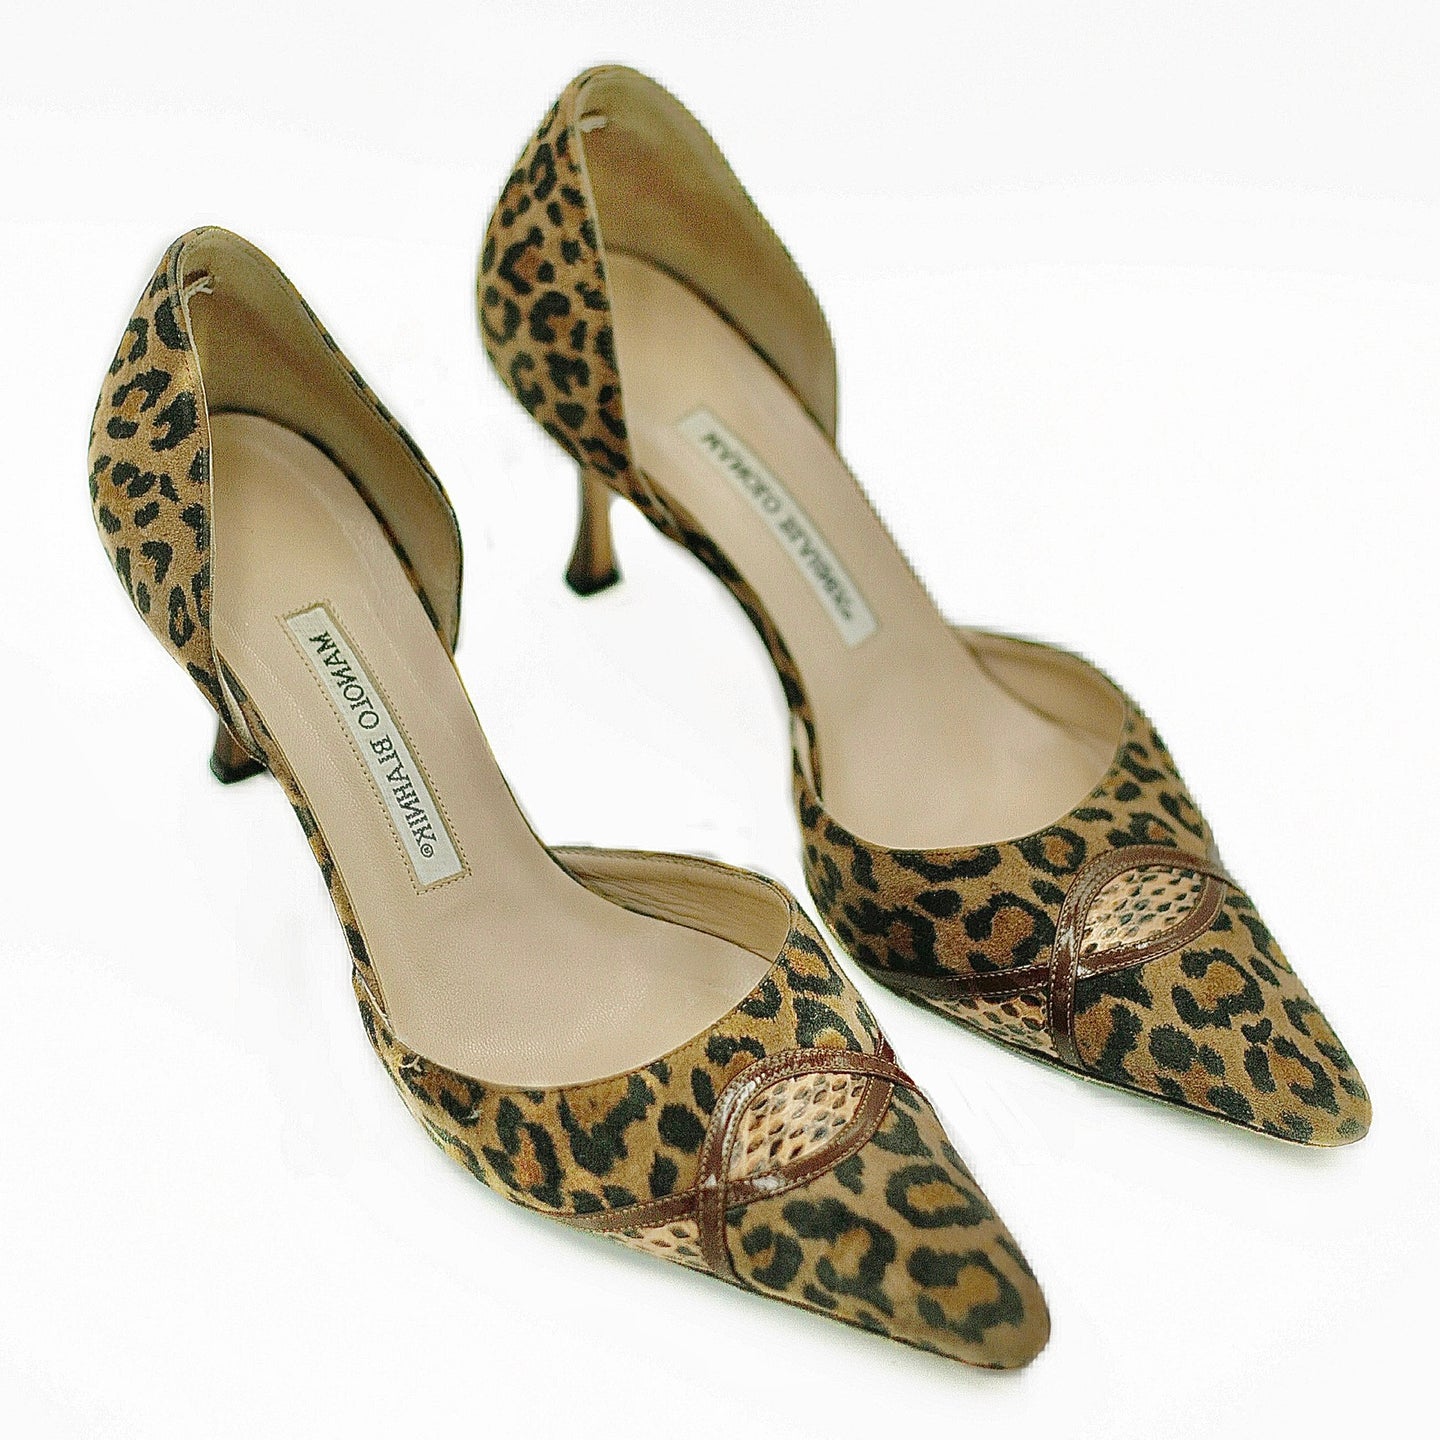 Manolo Blahnik leopard heels